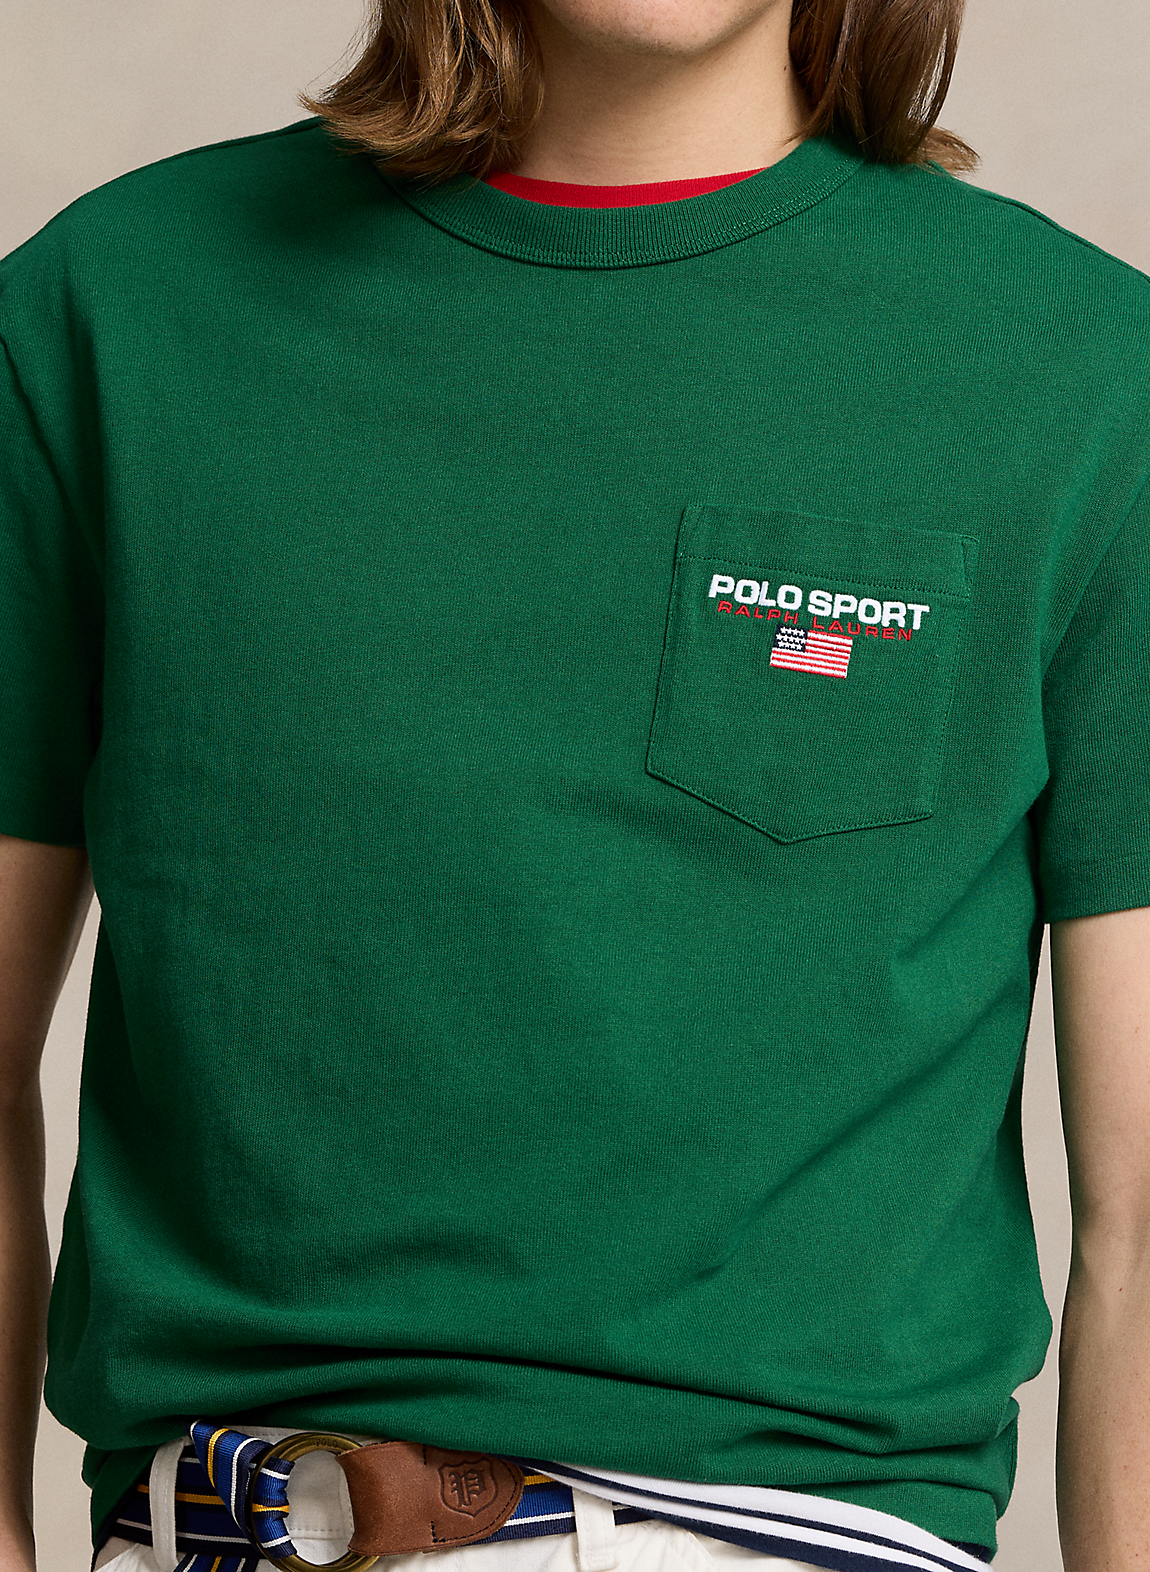 Polo Sport クラシック フィット ジャージー Tシャツ